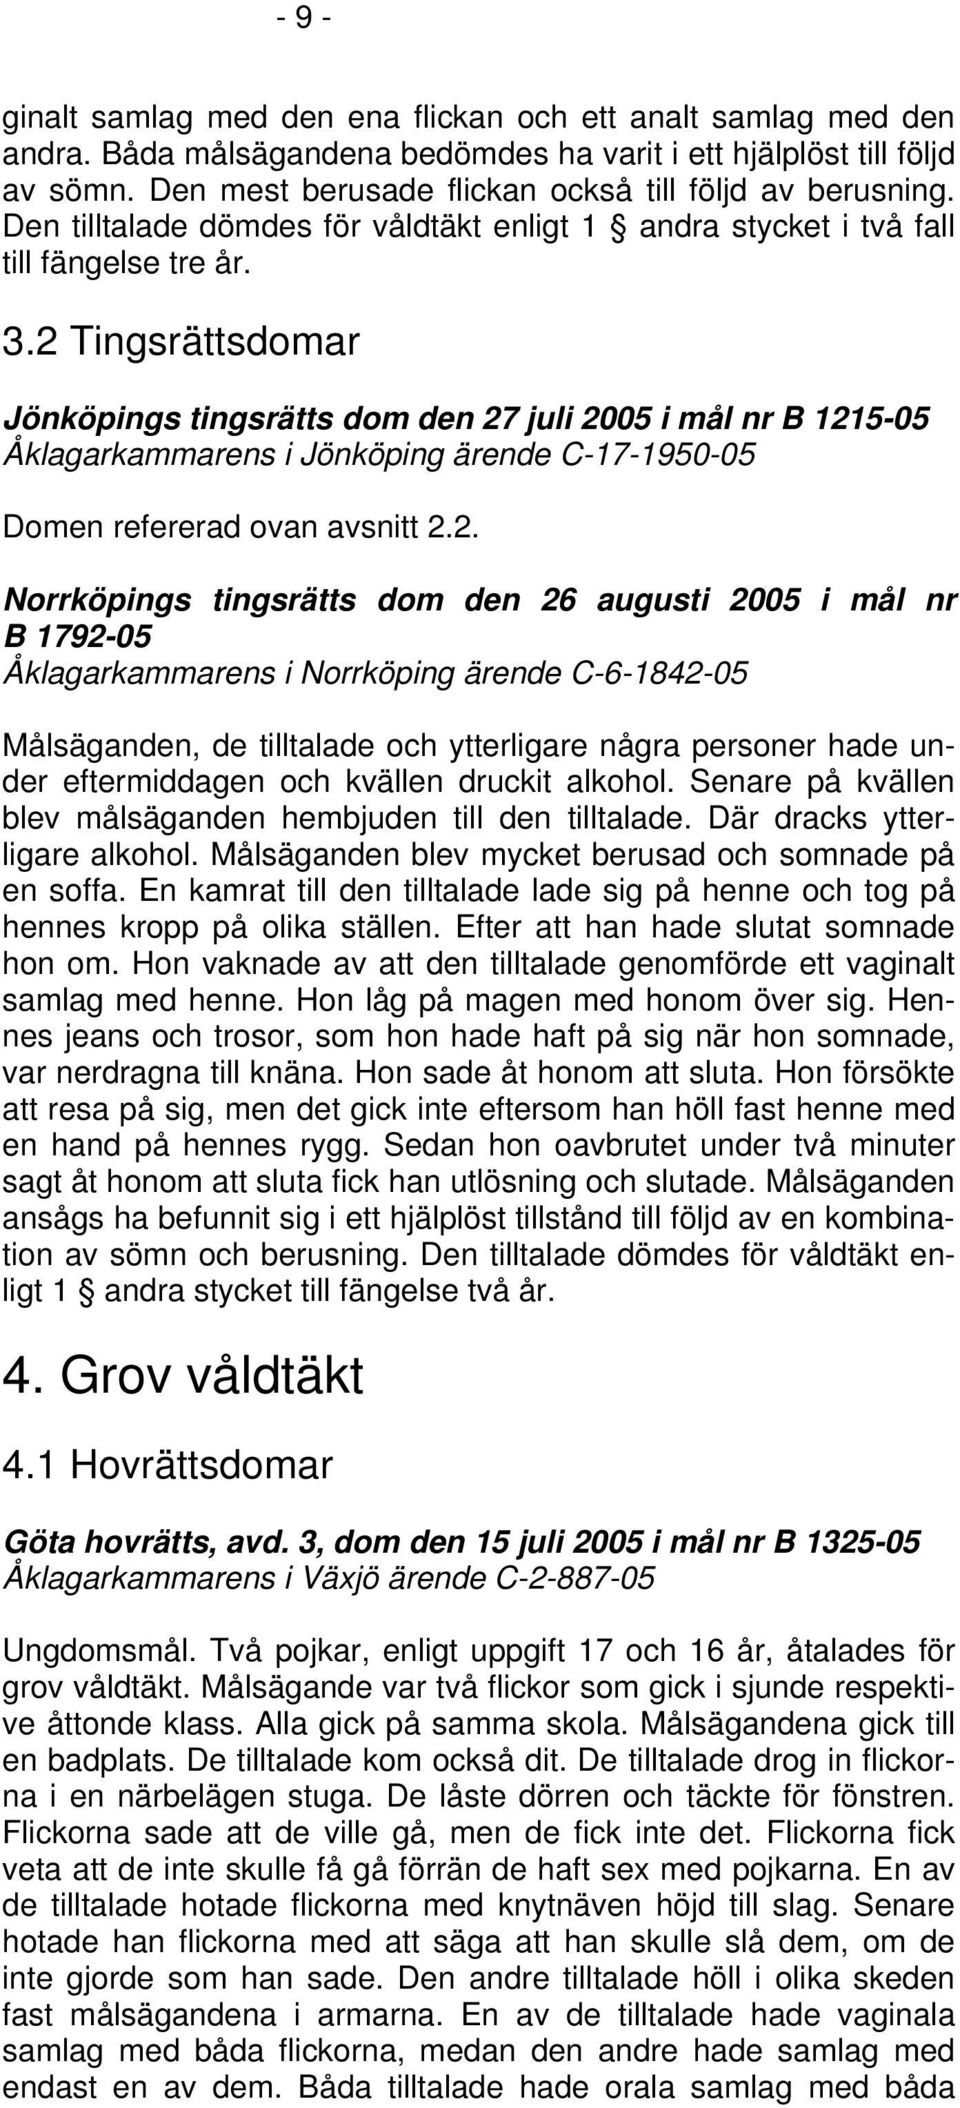 2 Tingsrättsdomar Jönköpings tingsrätts dom den 27 juli 2005 i mål nr B 1215-05 Åklagarkammarens i Jönköping ärende C-17-1950-05 Domen refererad ovan avsnitt 2.2. Norrköpings tingsrätts dom den 26